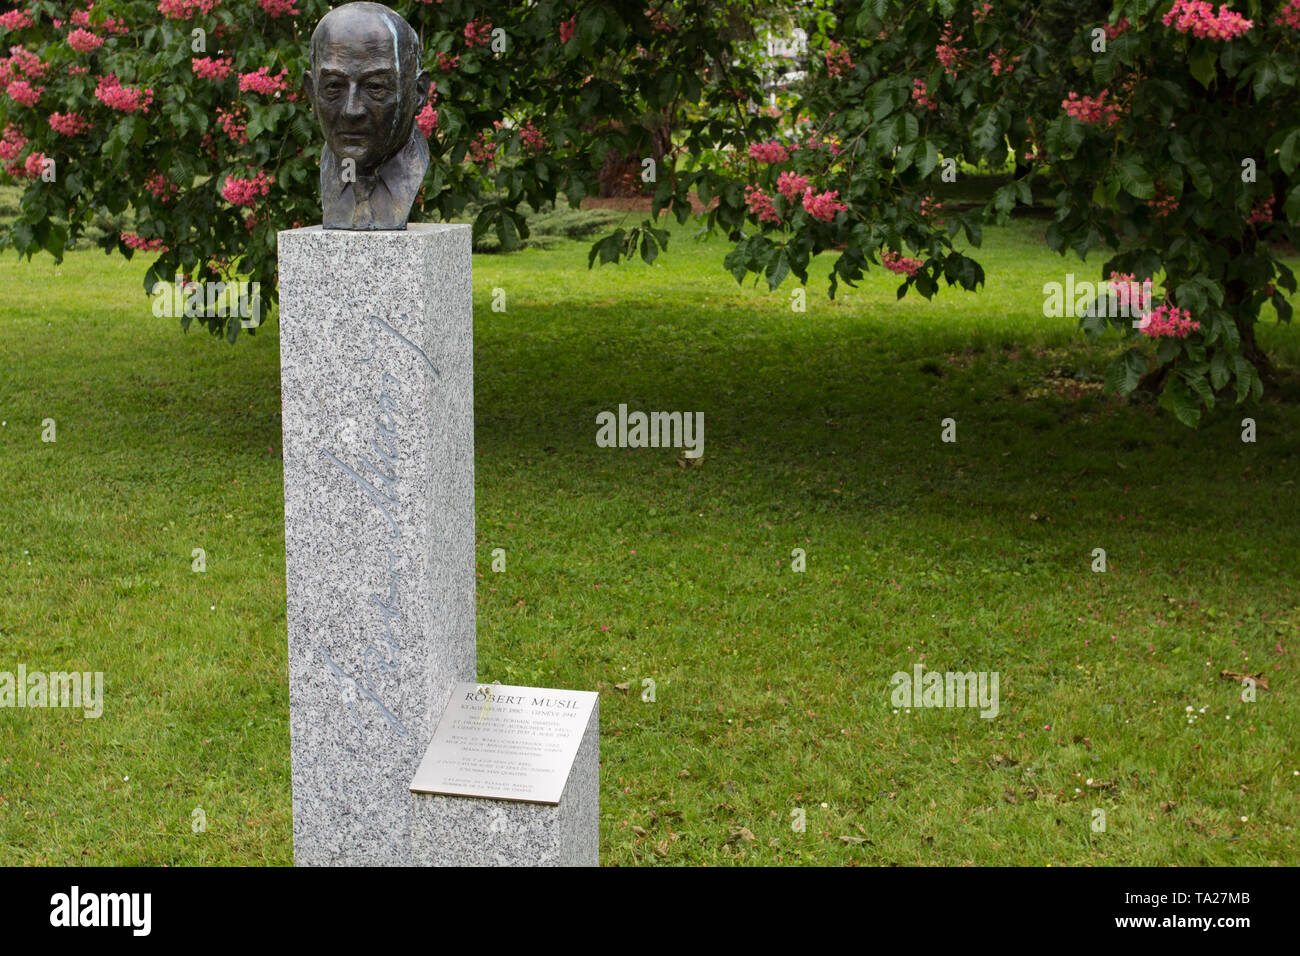 An homage to Robert Musil (The Man Without Qualities) - Memorial - Mortuaire de Plainpalais (Cimetière des Rois) - Geneva Stock Photo